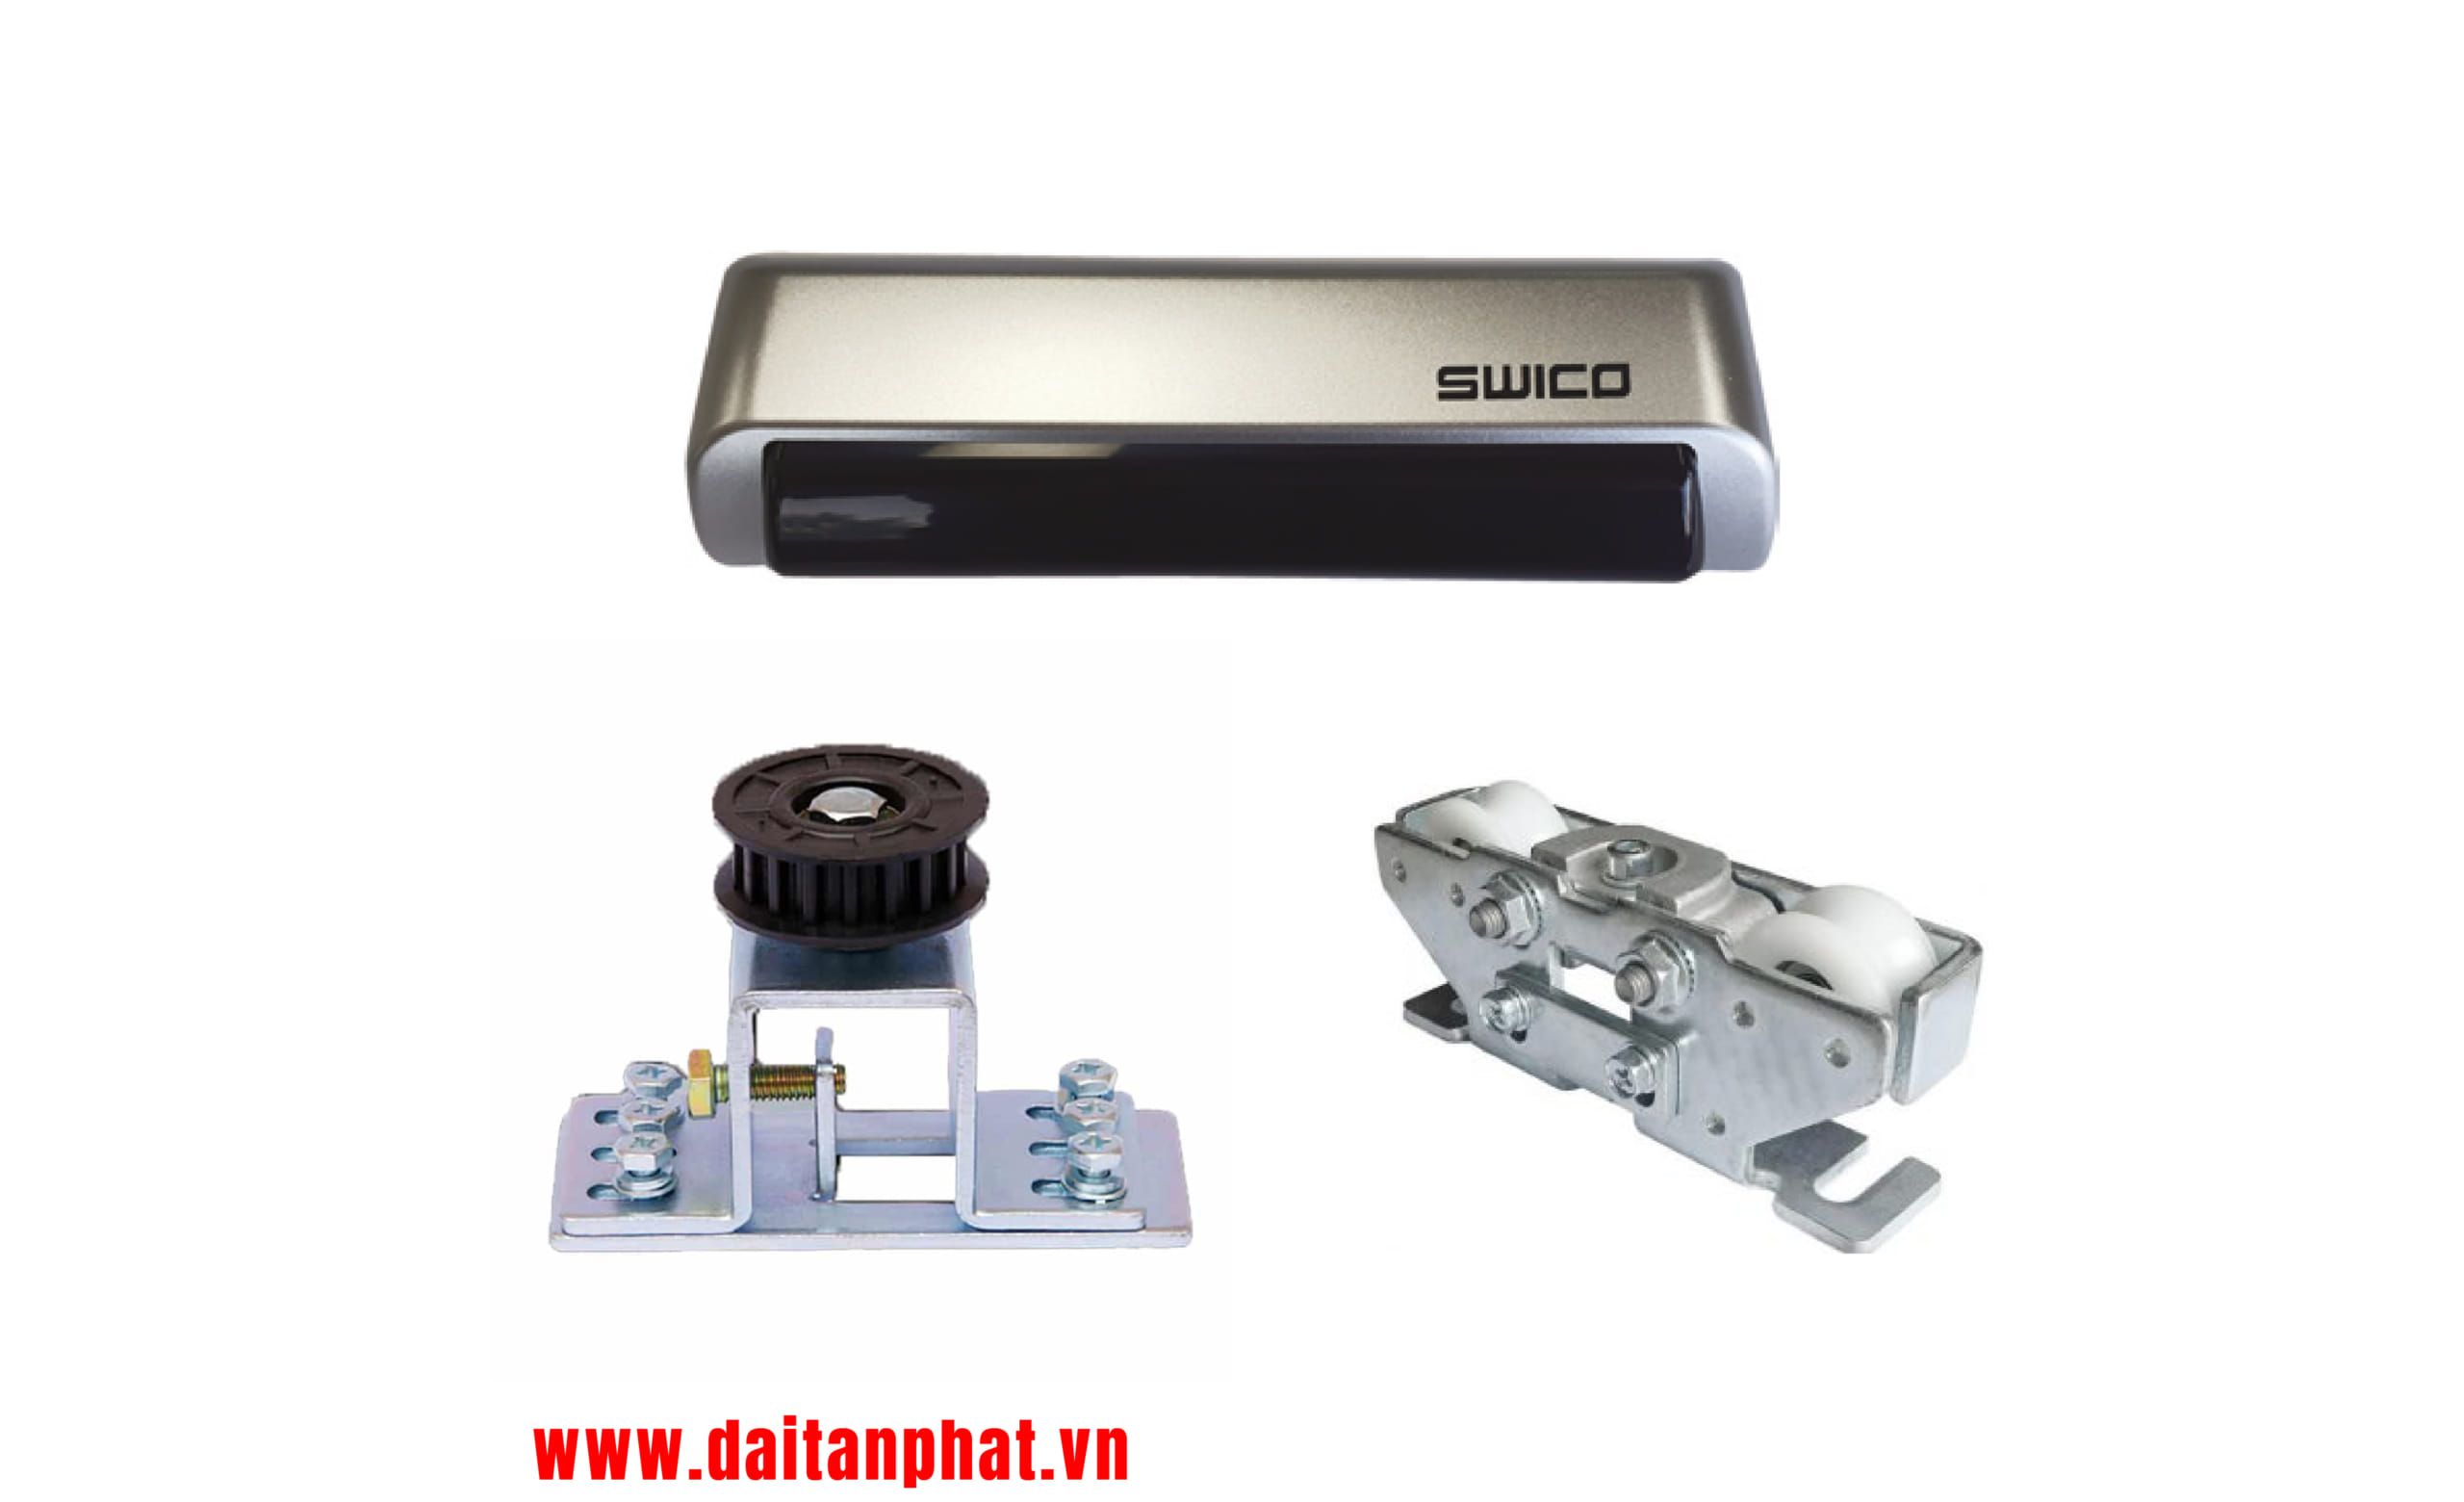 SWICO – SD60/ SD90